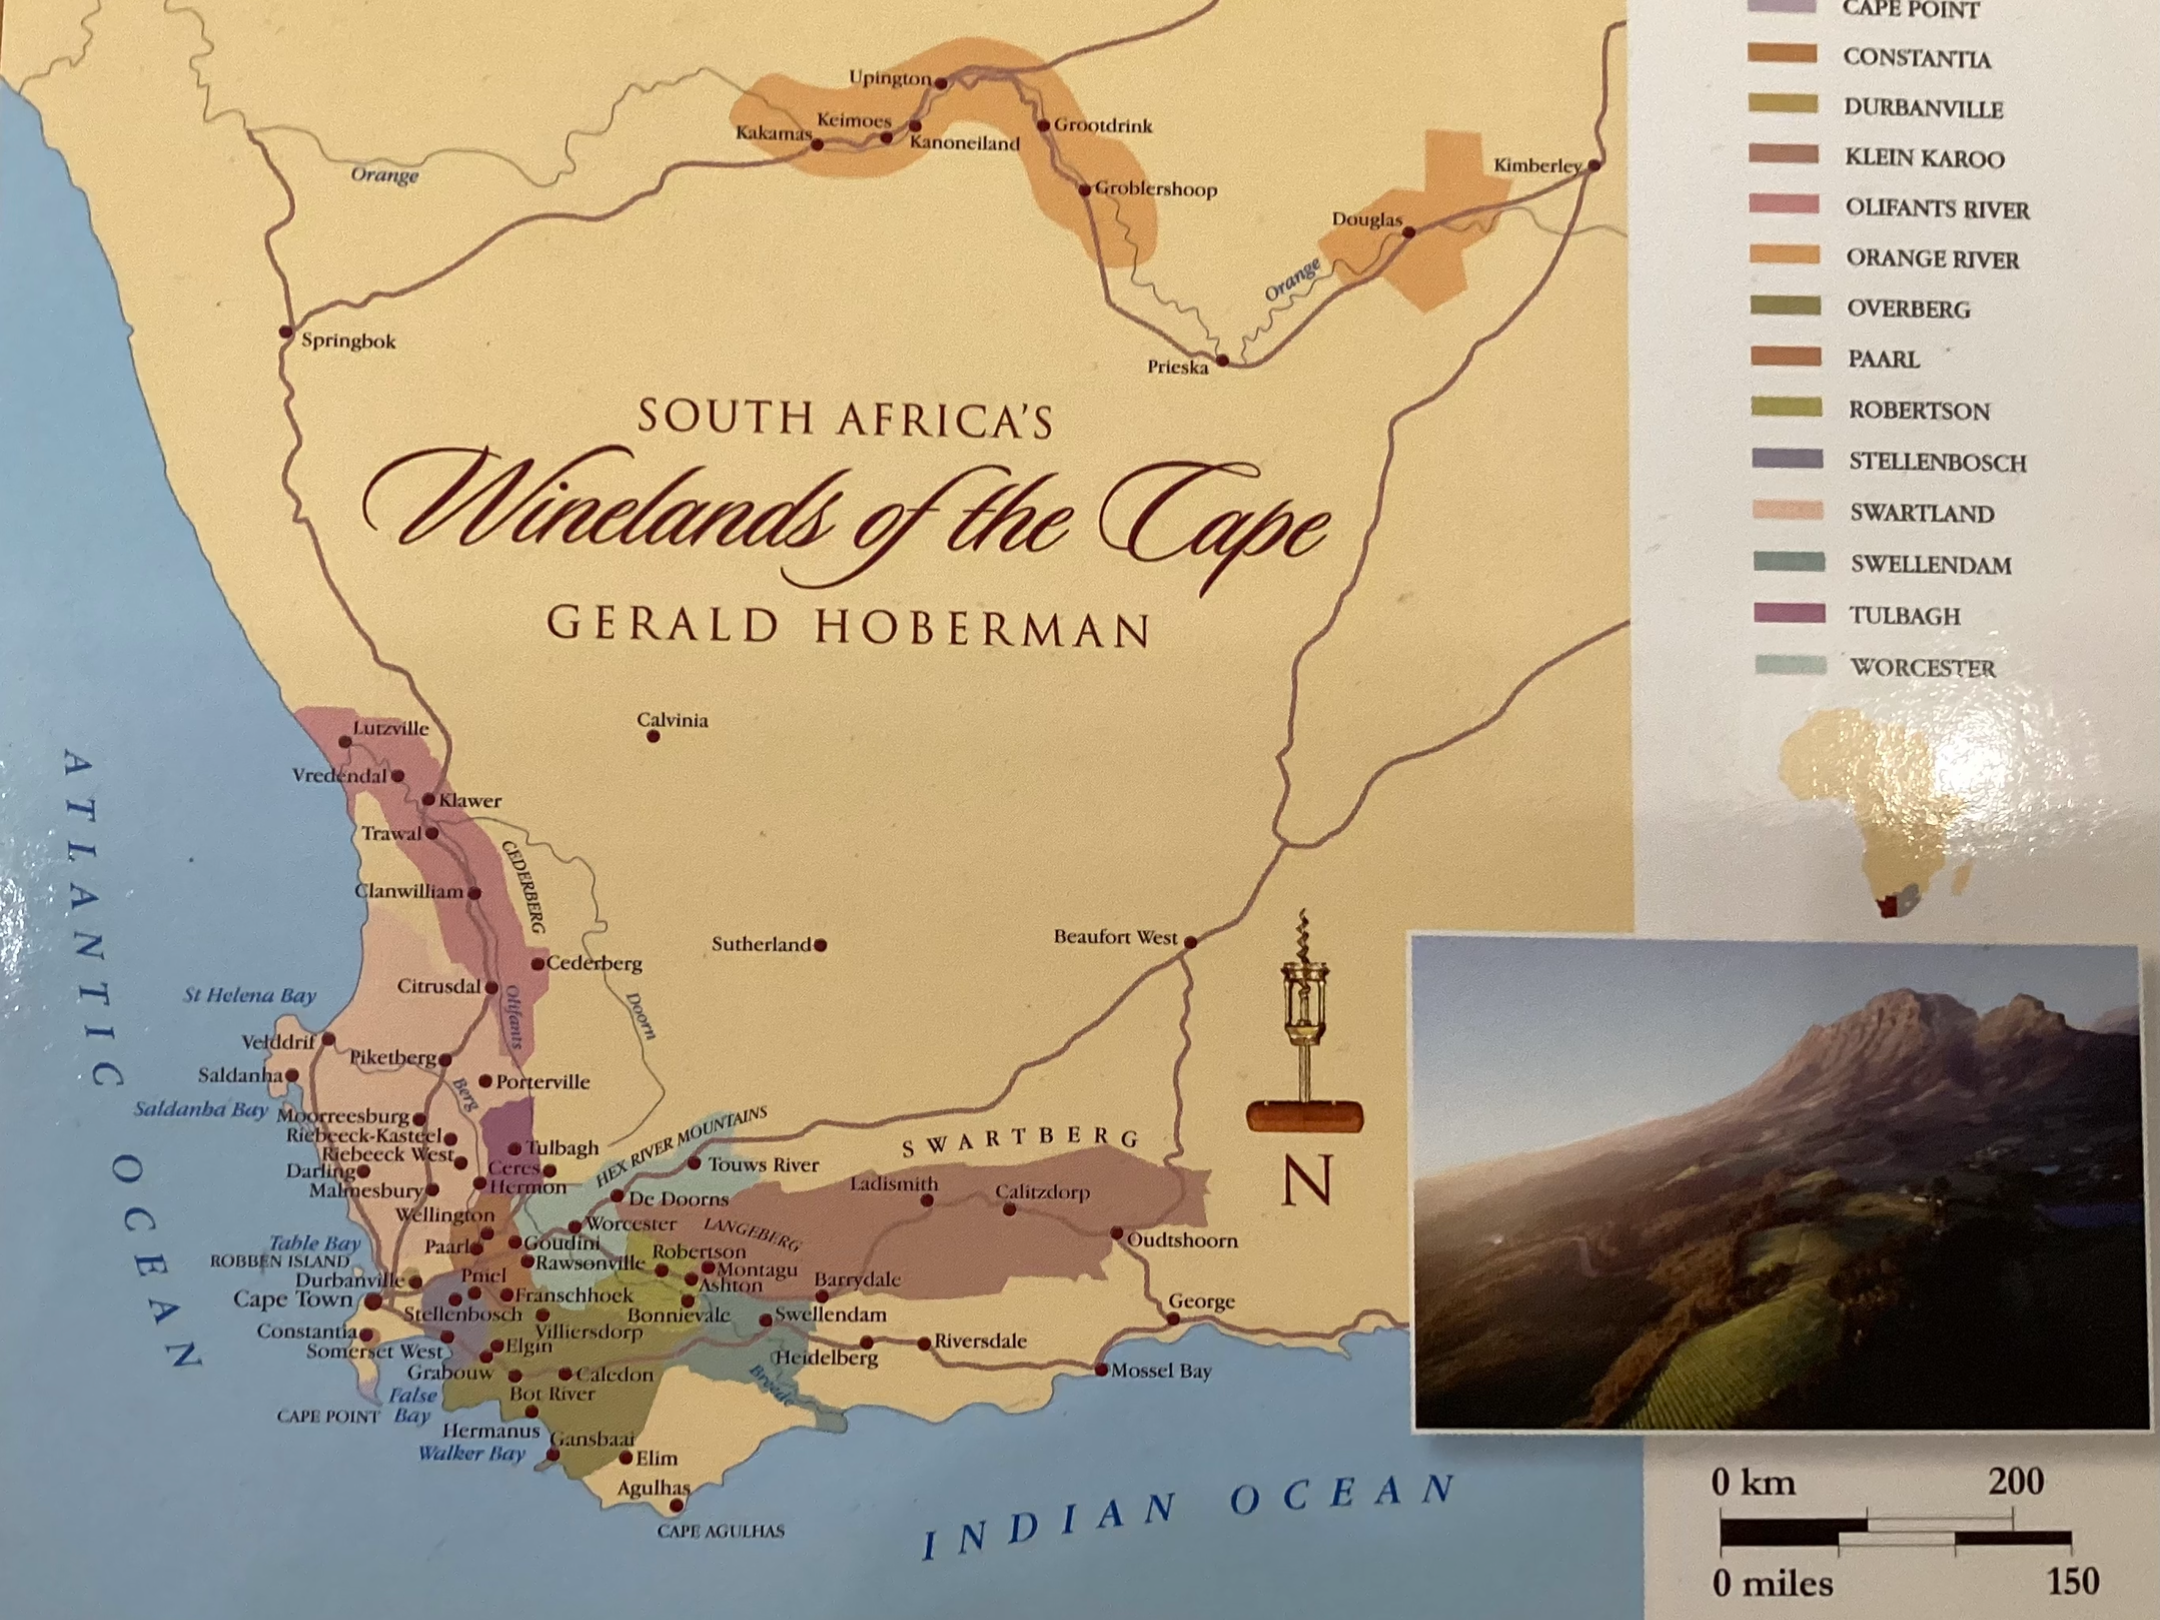 Western Cape Wine Area